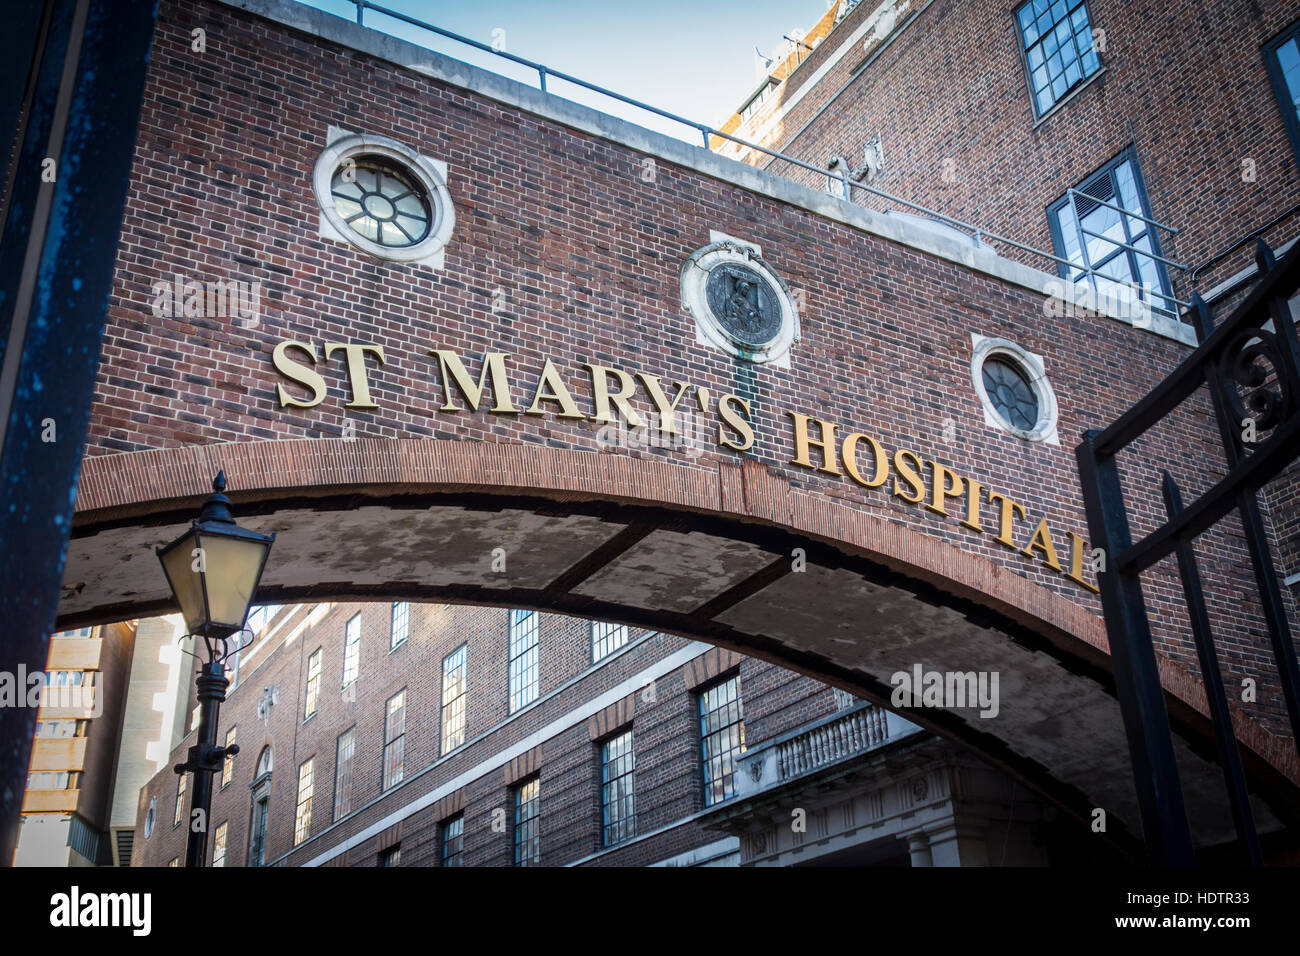 Außerhalb St. Marys Hospital Gebäude außen Logo Zeichen. London, UK Stockfoto